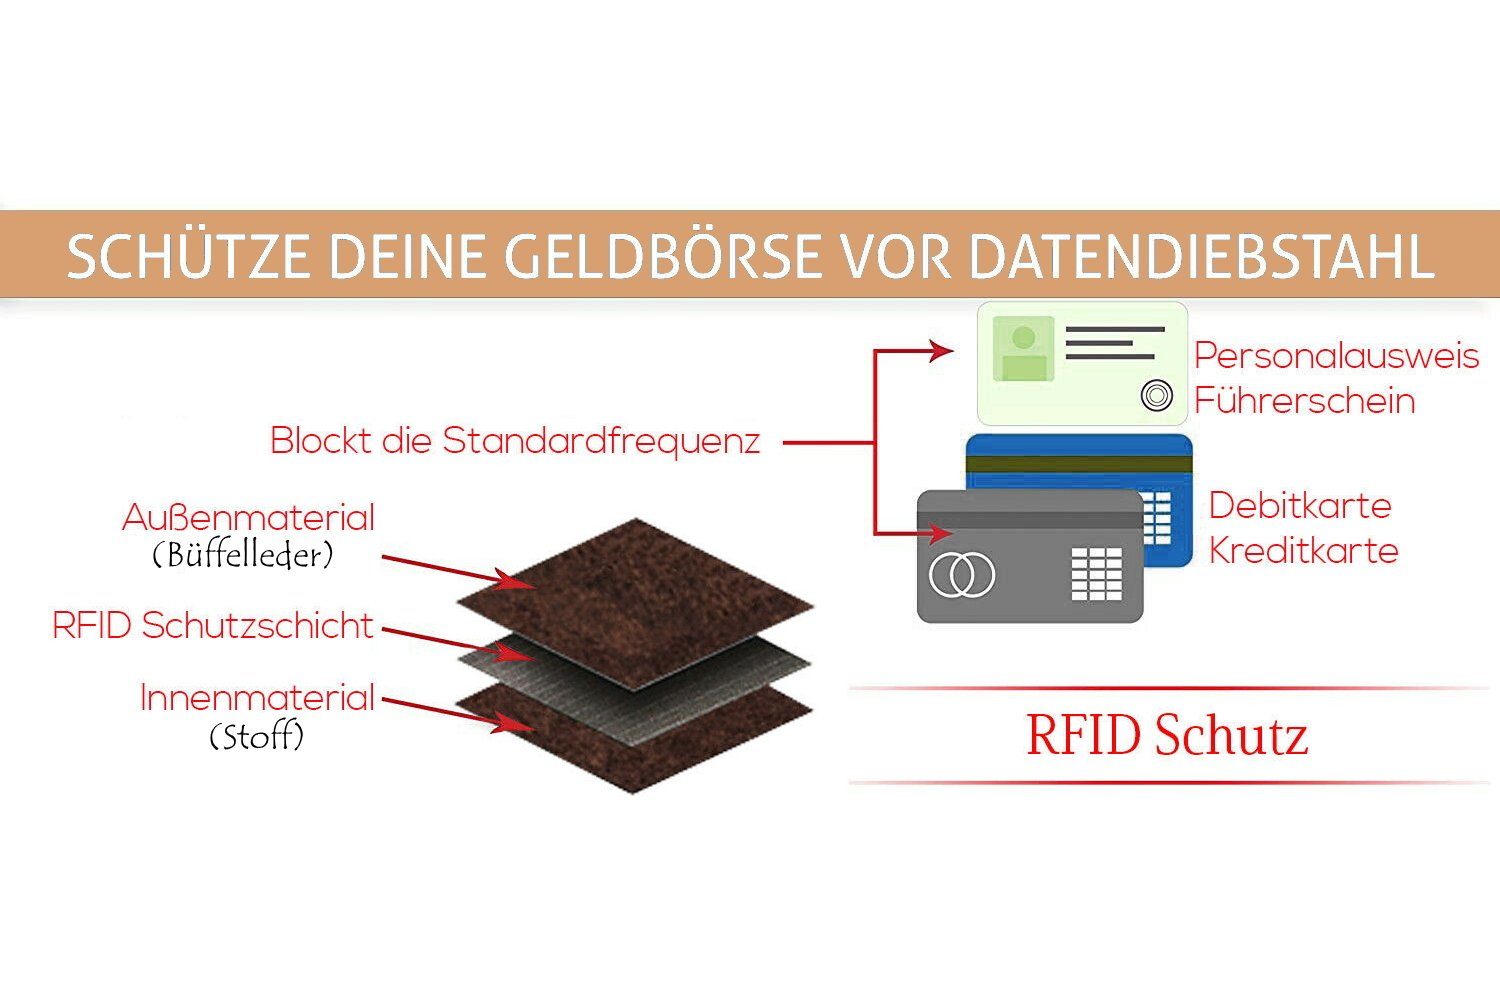 Geldbörse mit Querformat Wallet L&B elegantes RFID-Schutz, 8 integrierter Braun in Portemonnaie, Kartenfächern im Büffelleder